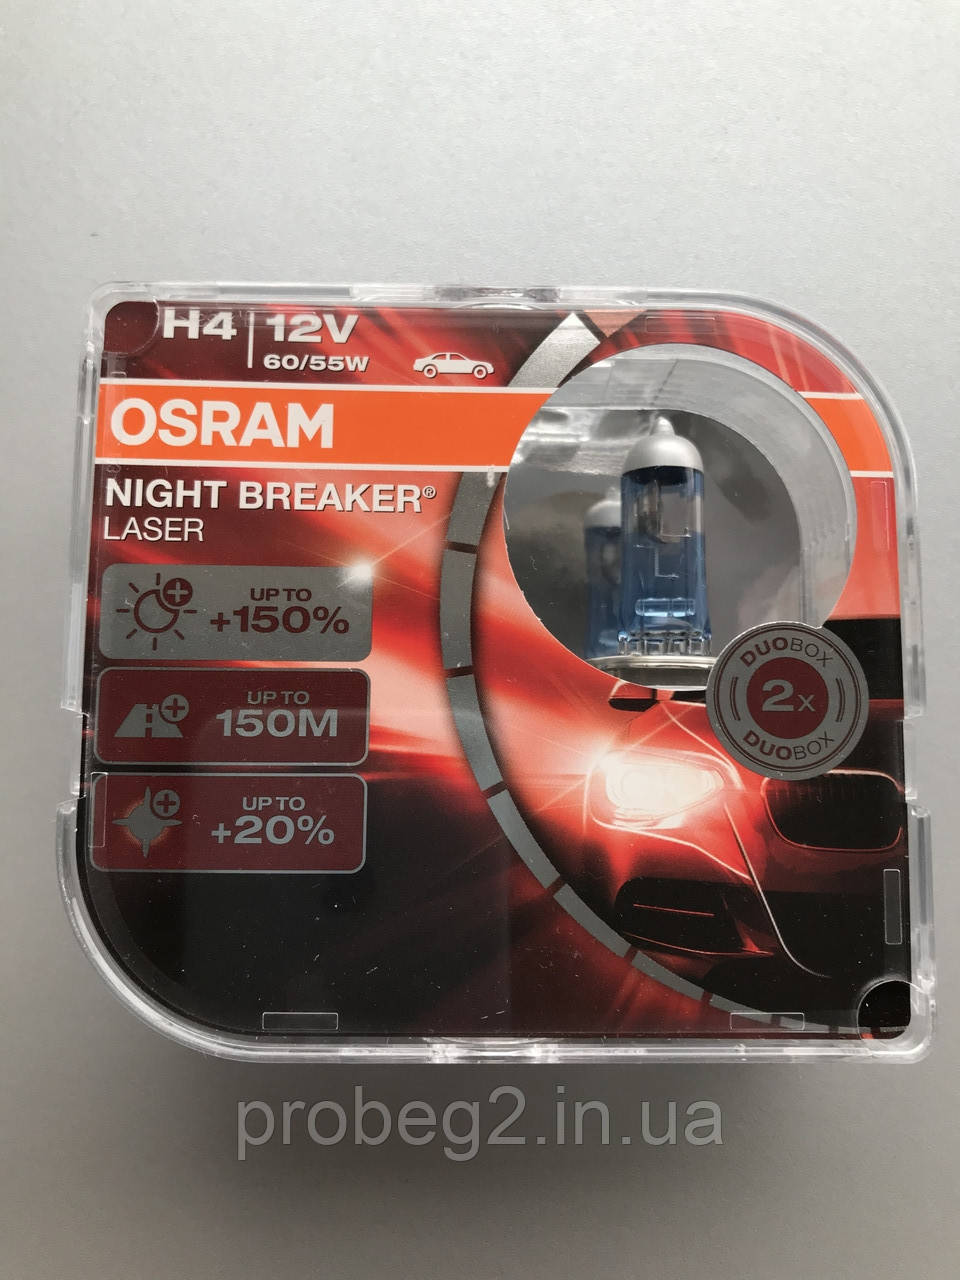 лампи OSRAM Night Breaker las H4+150% 12V 60/55W 64193 NBU-HCB, фото 1